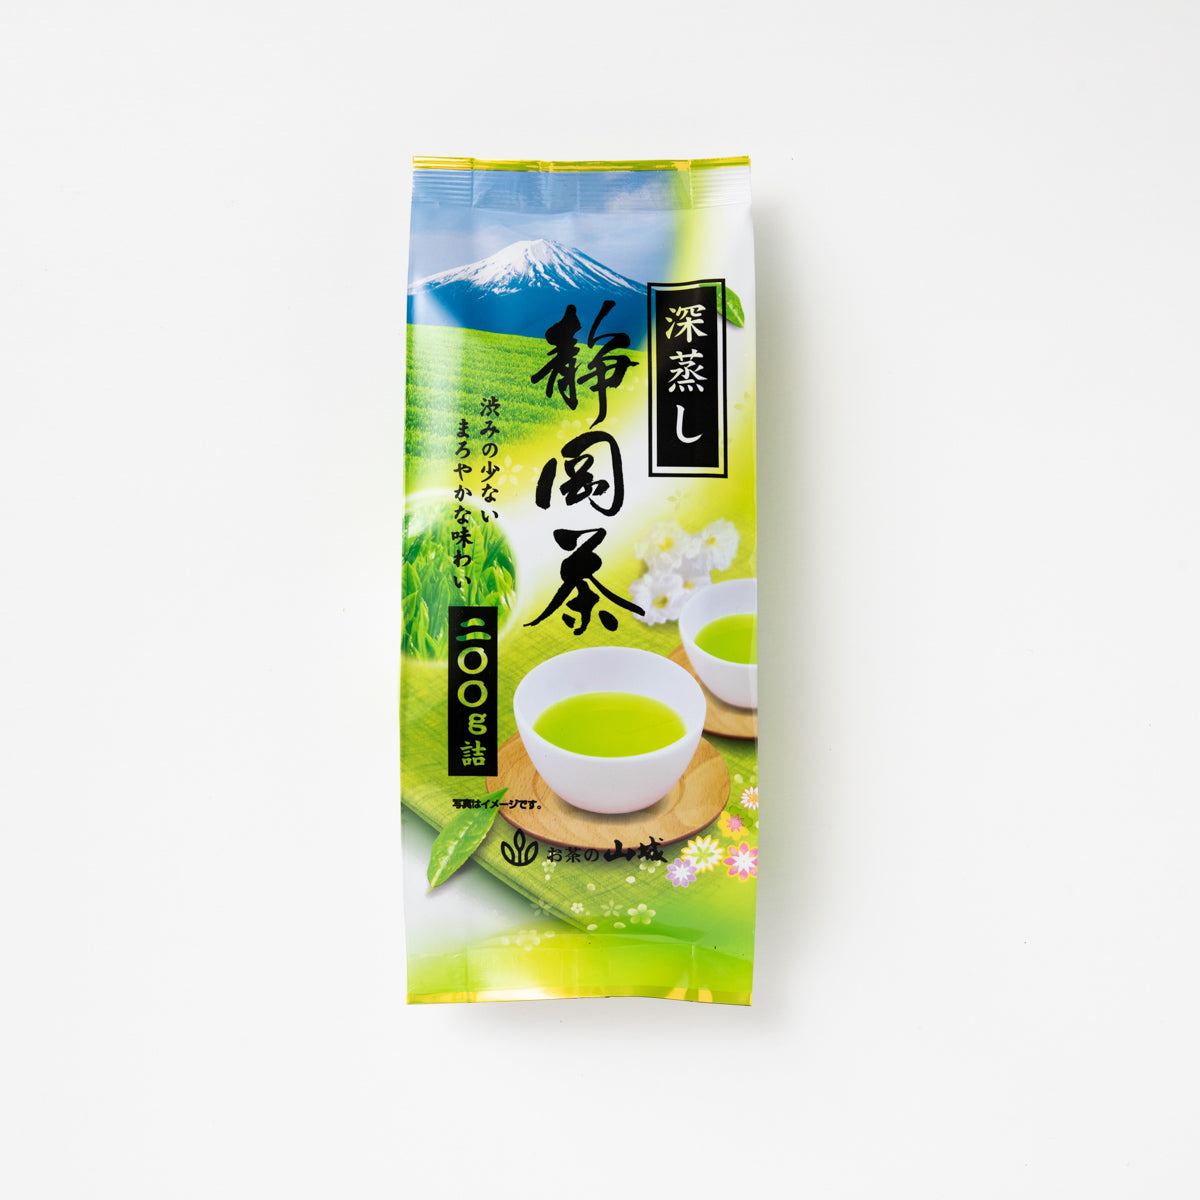 大和茶一番茶 大和茶 日本茶 奈良 奈良県 山城物産 日本茶 お茶